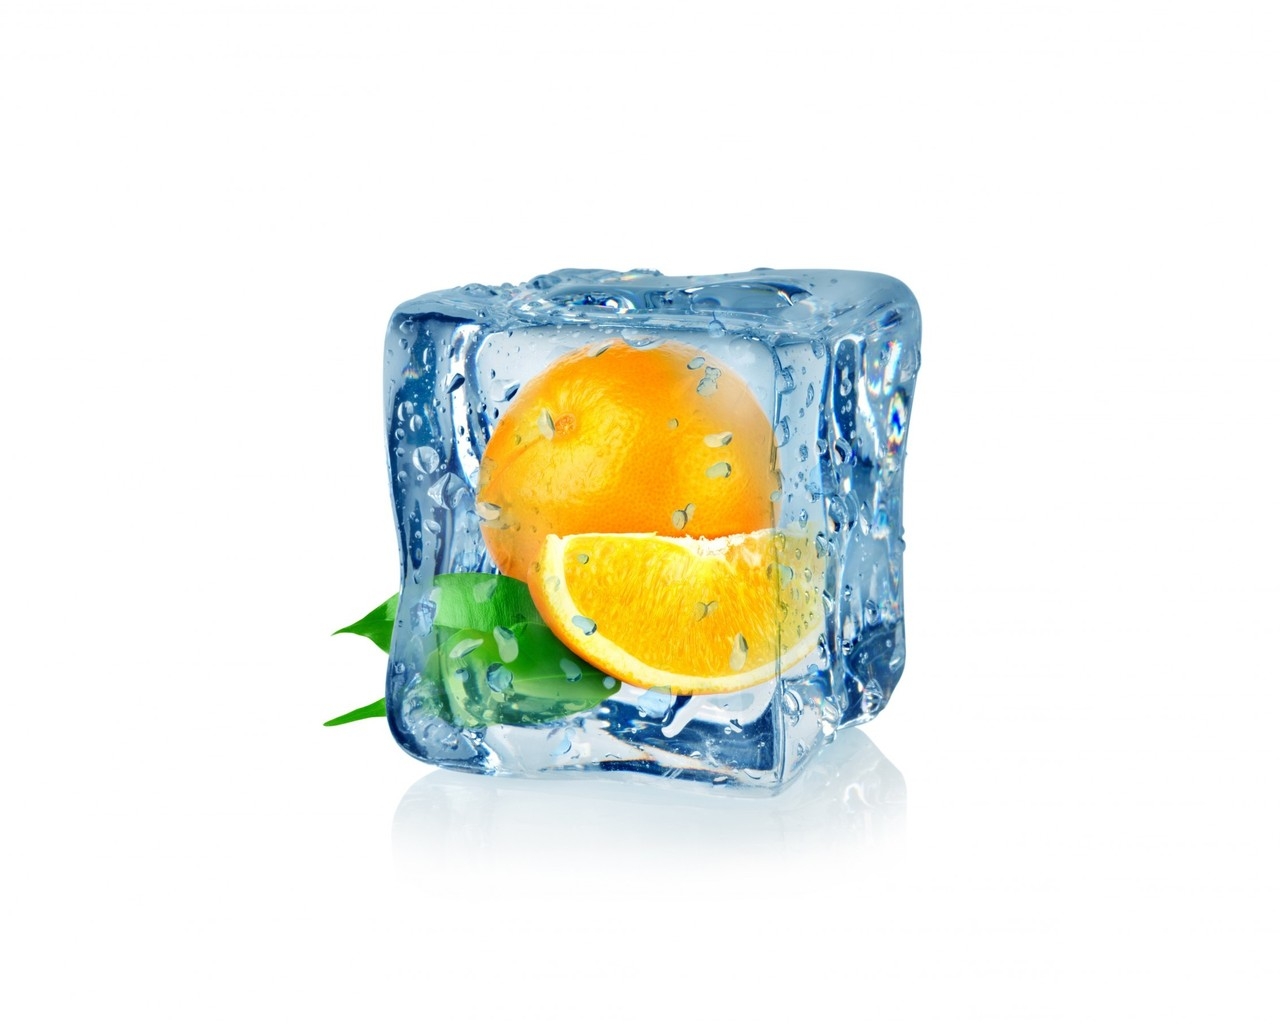 Frozen Orange for 1280 x 1024 resolution